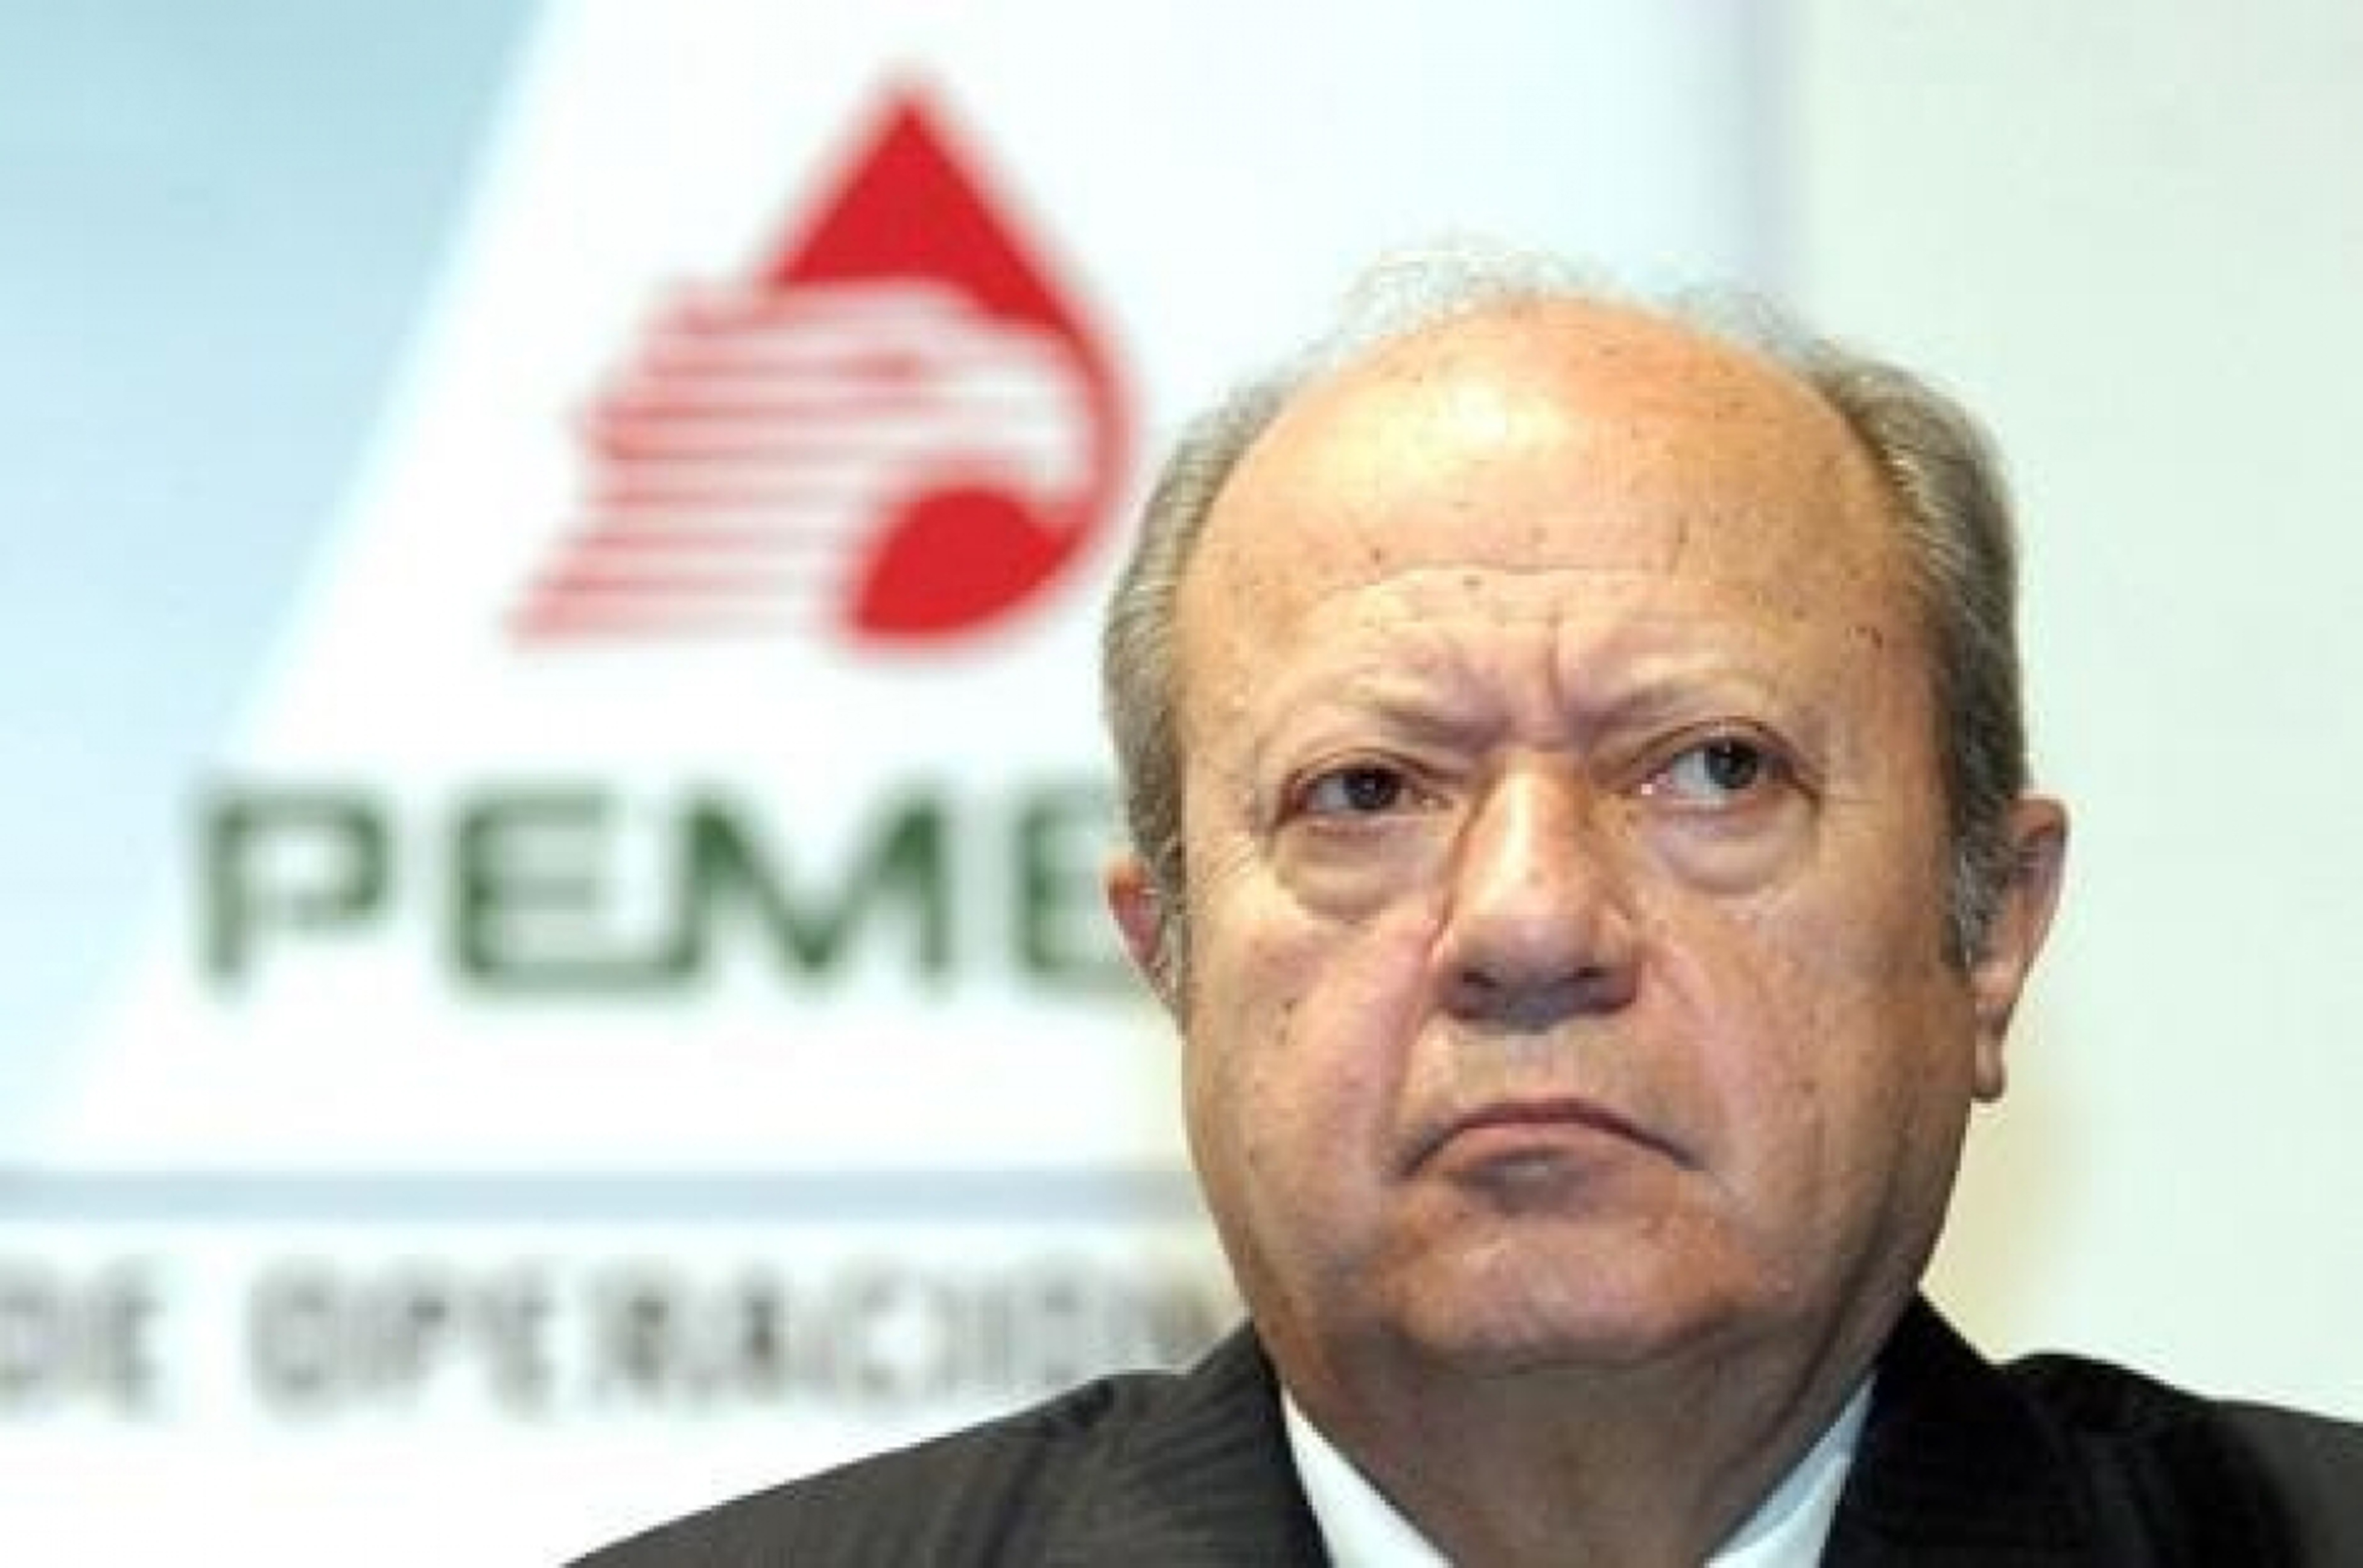  Para evitar acusaciones de corrupción, renuncia Romero Deschamps a sindicato de Pemex